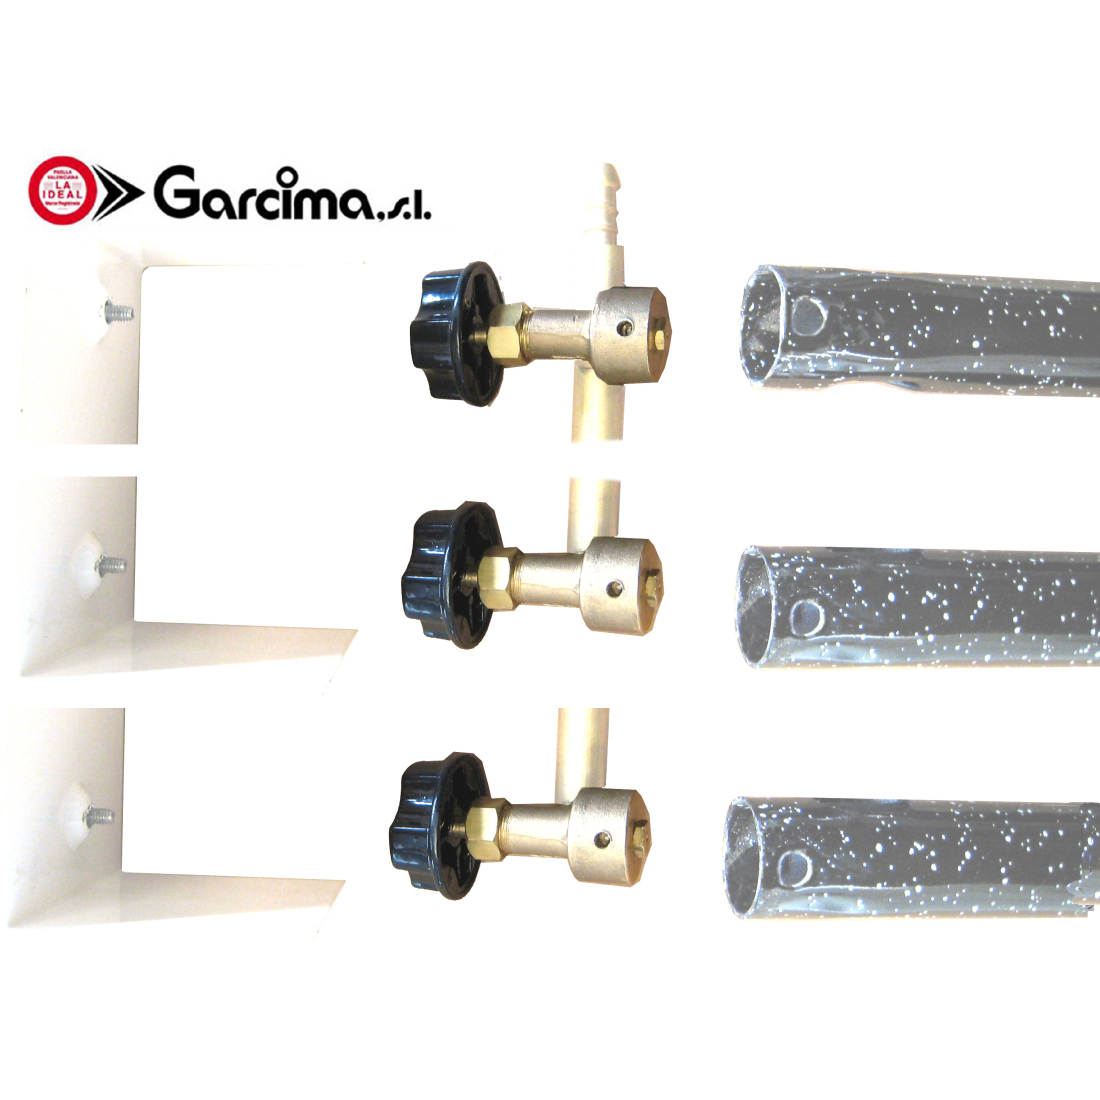 Faucet Kit for Garcima Gas Burner 1st version